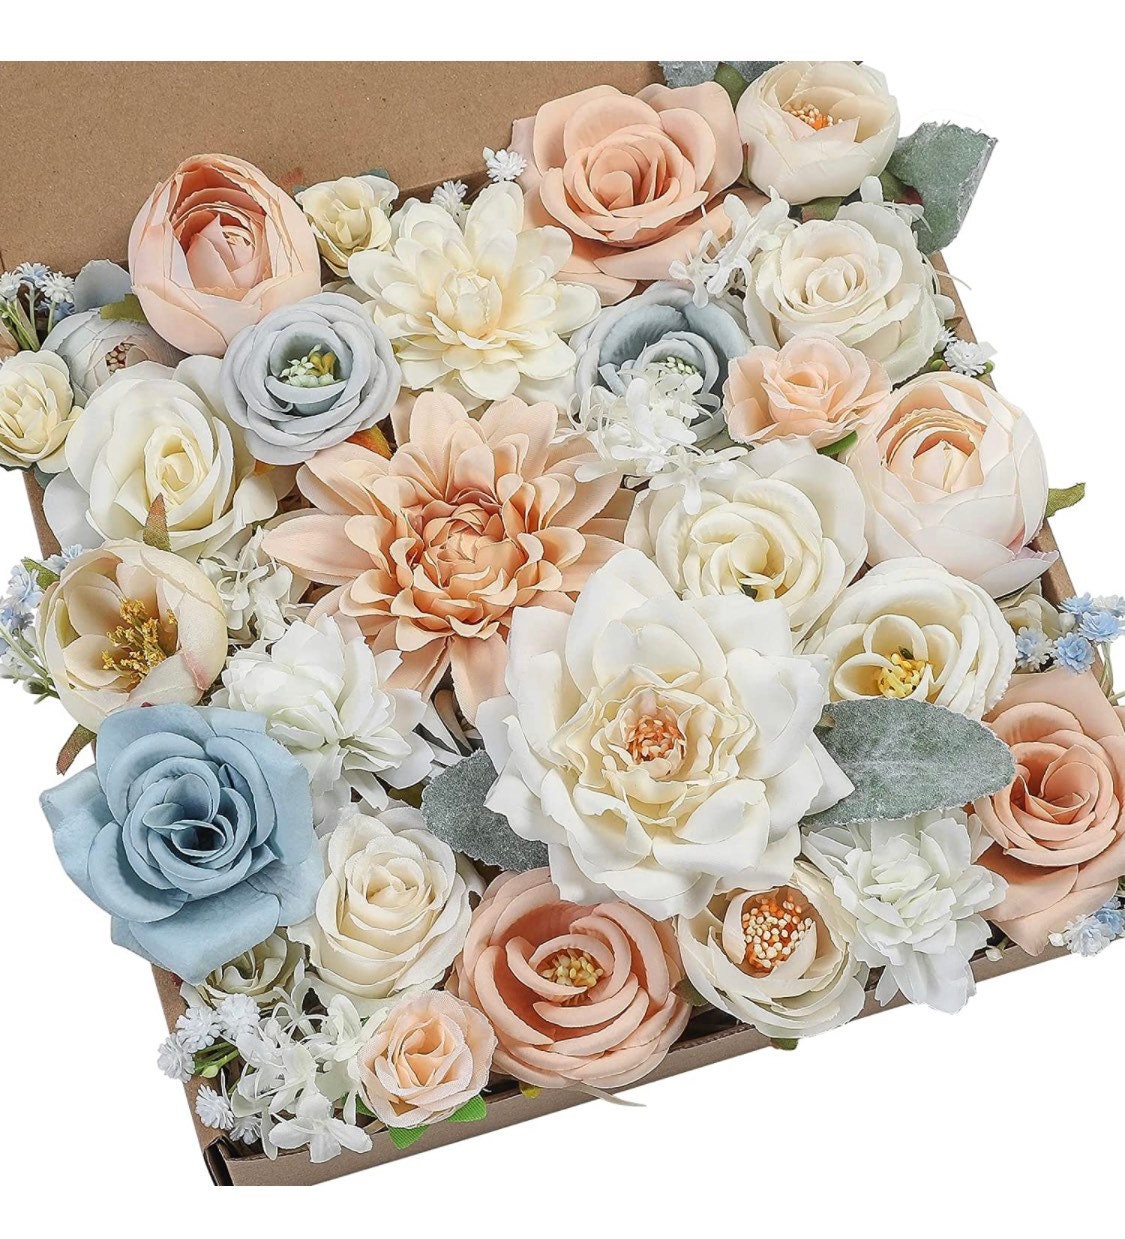 Silk Flowers - Bridal Bouquet Flowers - Great for Wedding Bouquet Decor Centerpieces Bridal Shower Party Decoration